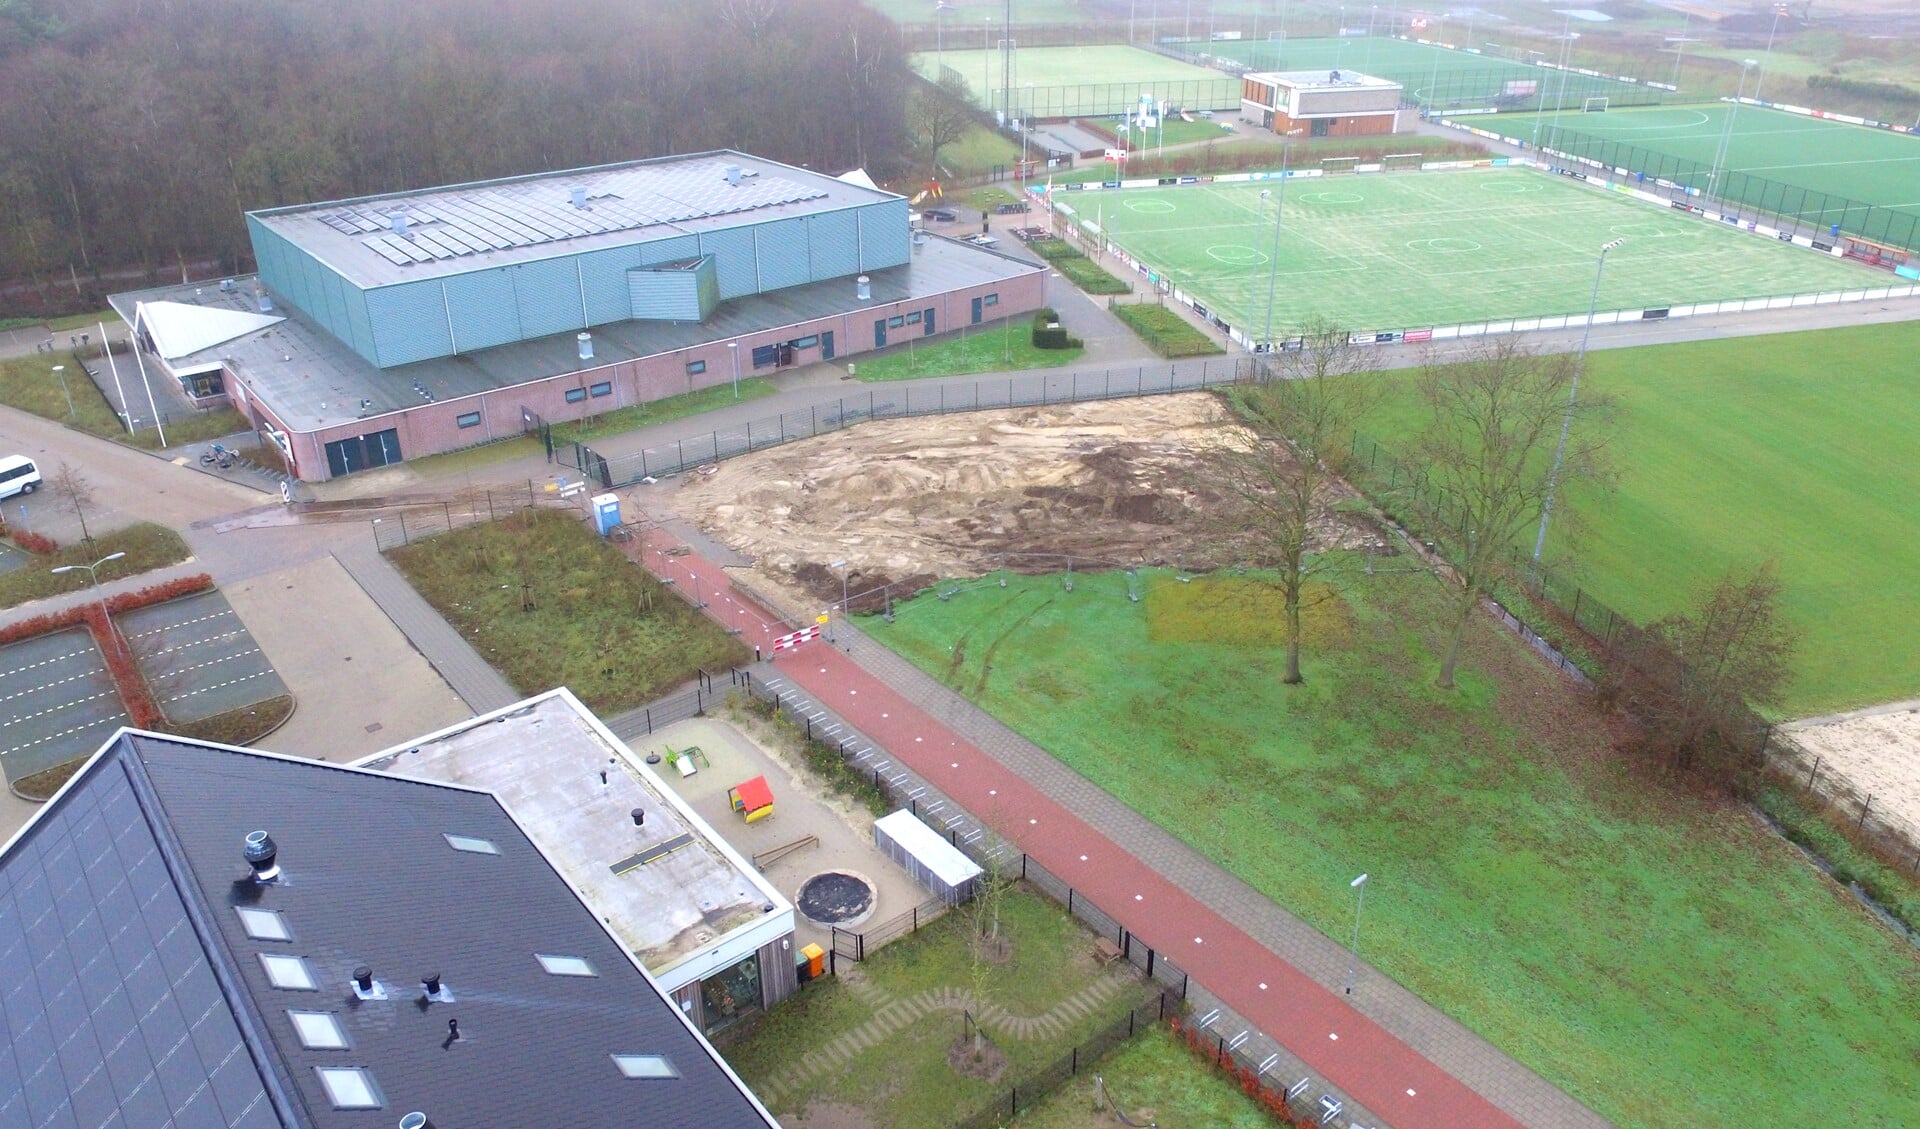 Door de sloop van het voormalige clubhuis van MHCB is er een gapend gat ontstaan op sportpark Oosterbos.